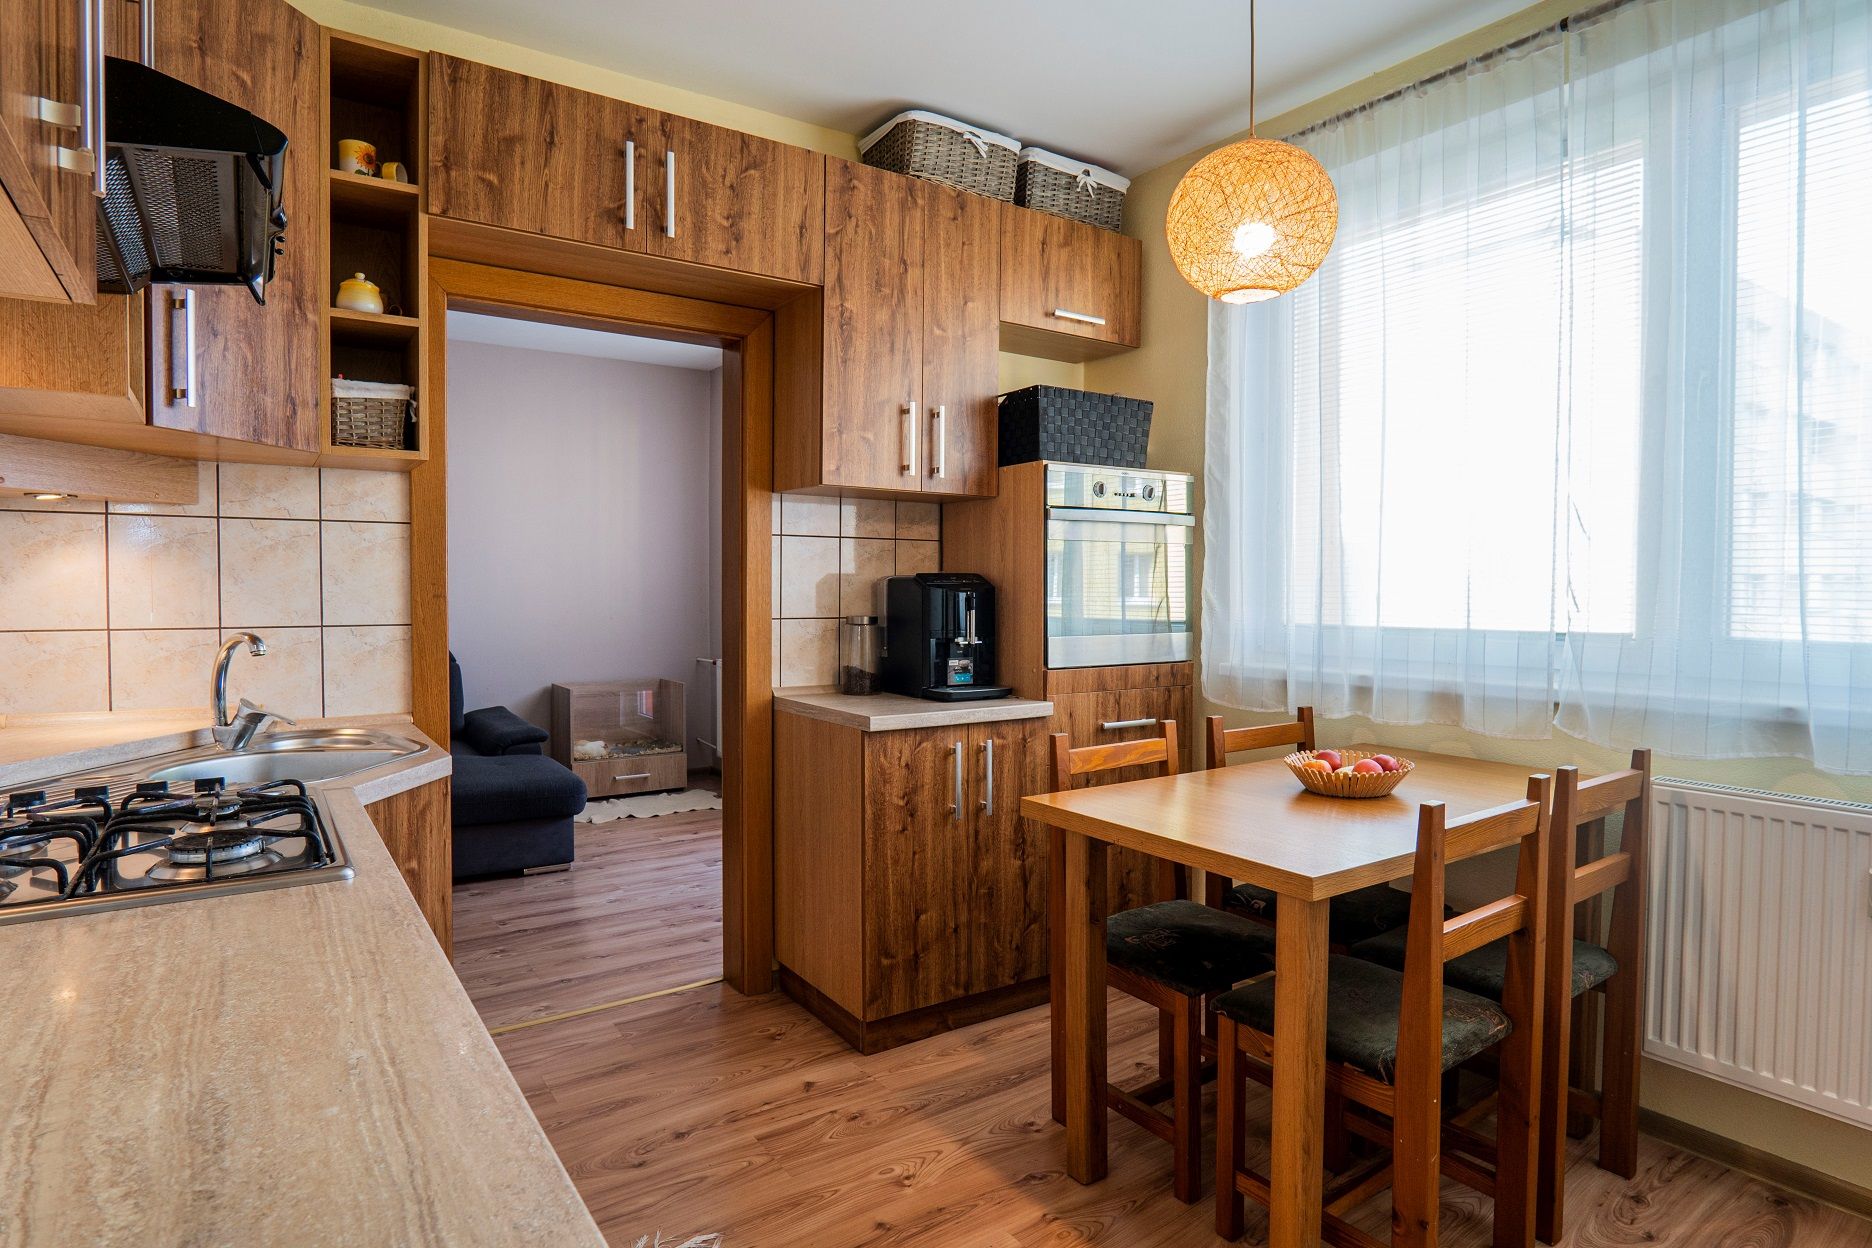 PREDANÝ: 4-izbový kompletne zrenovovaný byt s lodžiou na sídlisku Západ v Levoči, 81 m2